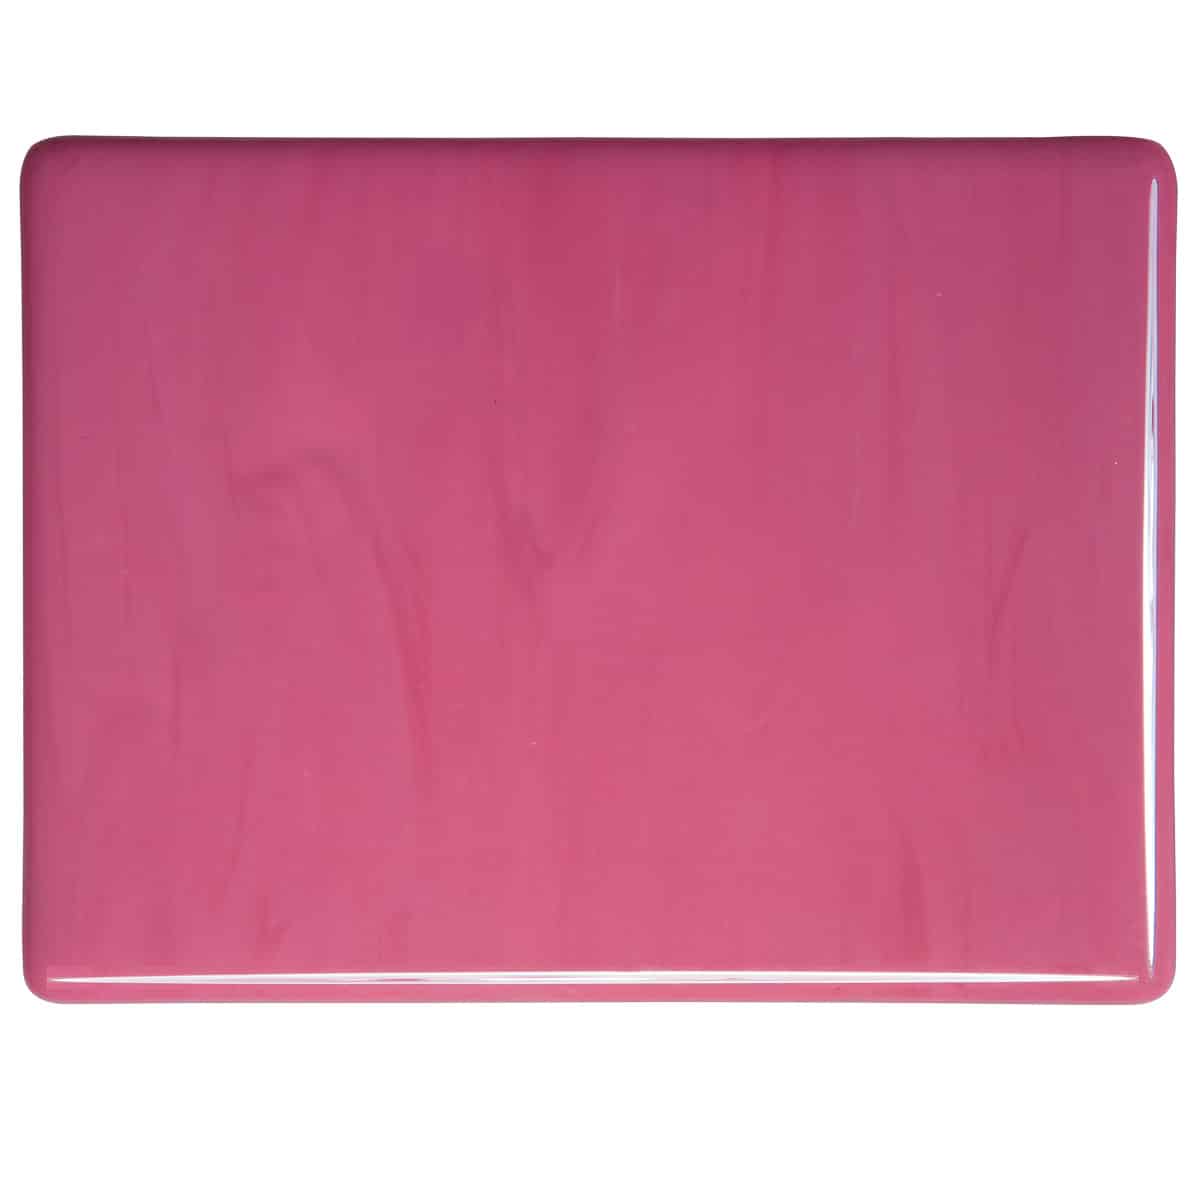 Pink Opal sheet glass swatch